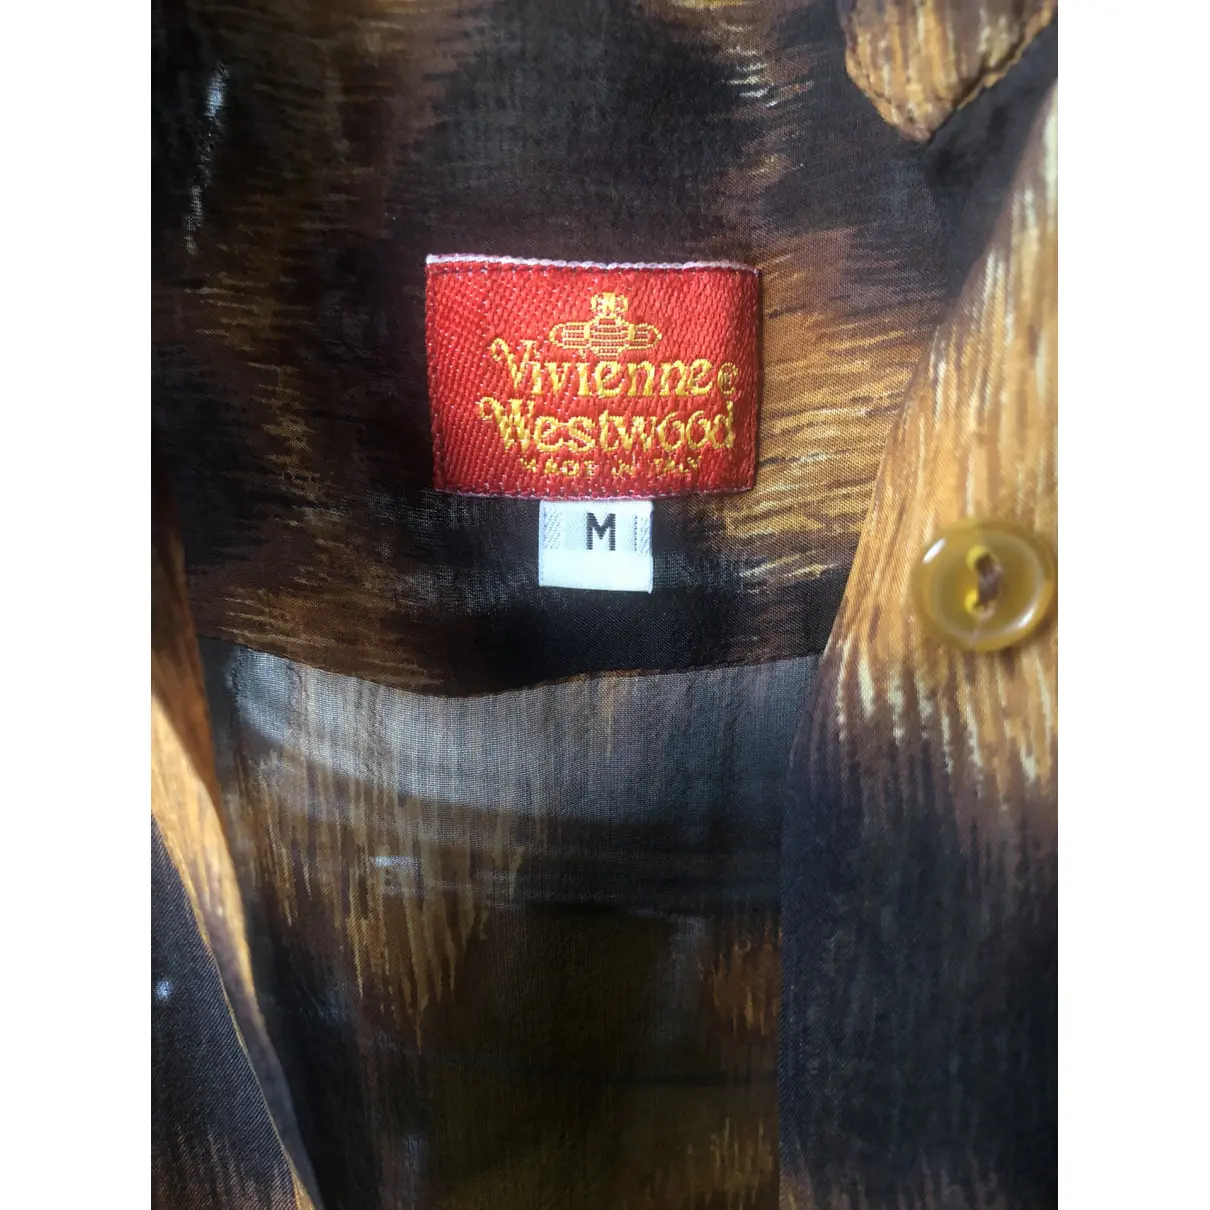 Buy Vivienne Westwood Red Label Silk top online - Vintage